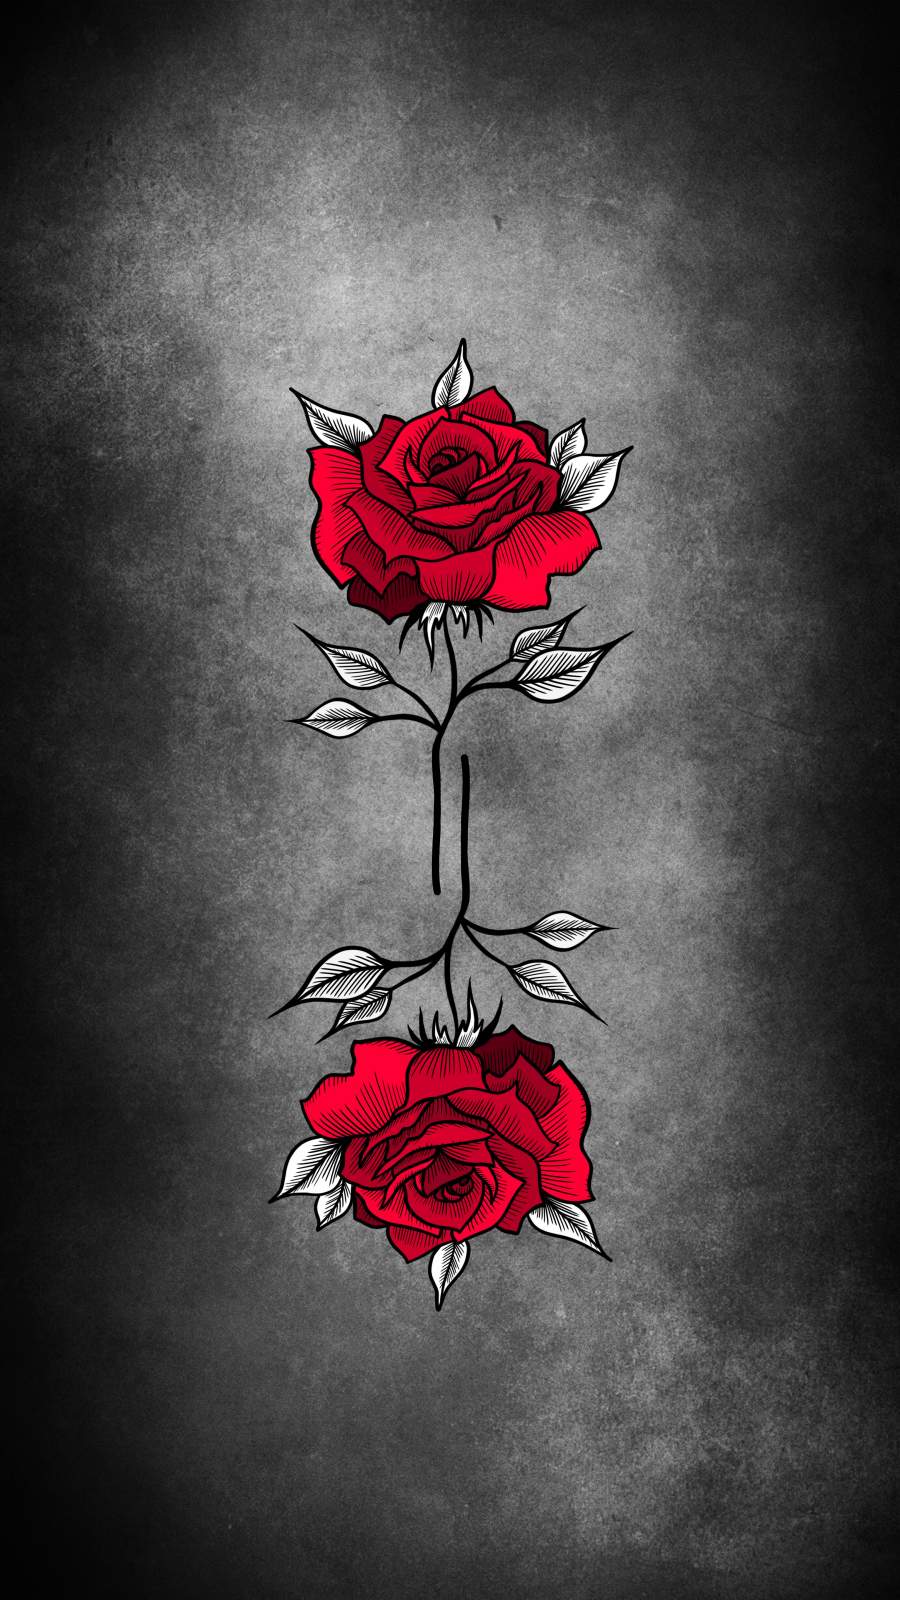 Red Rose Artwork IPhone Wallpaper - IPhone Wallpapers : iPhone Wallpapers